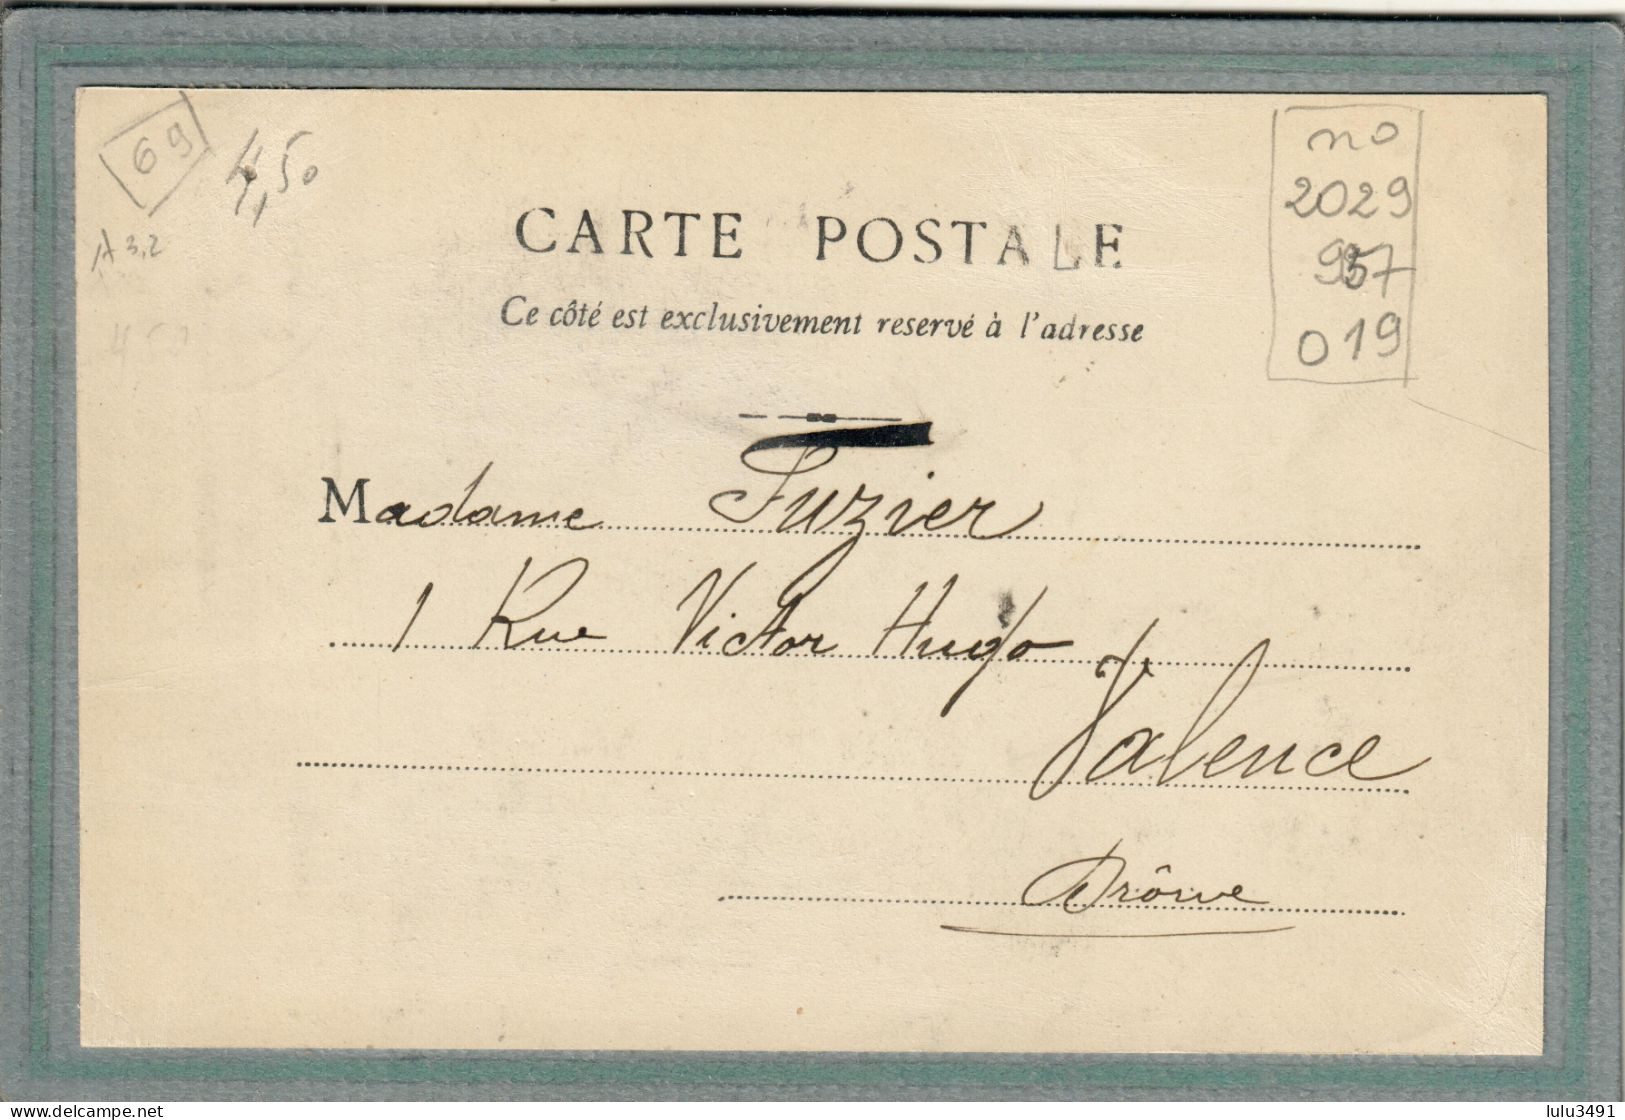 CPA (69) JULIENAS - Aspect De L'entrée Du Pays En 1905 - Julienas